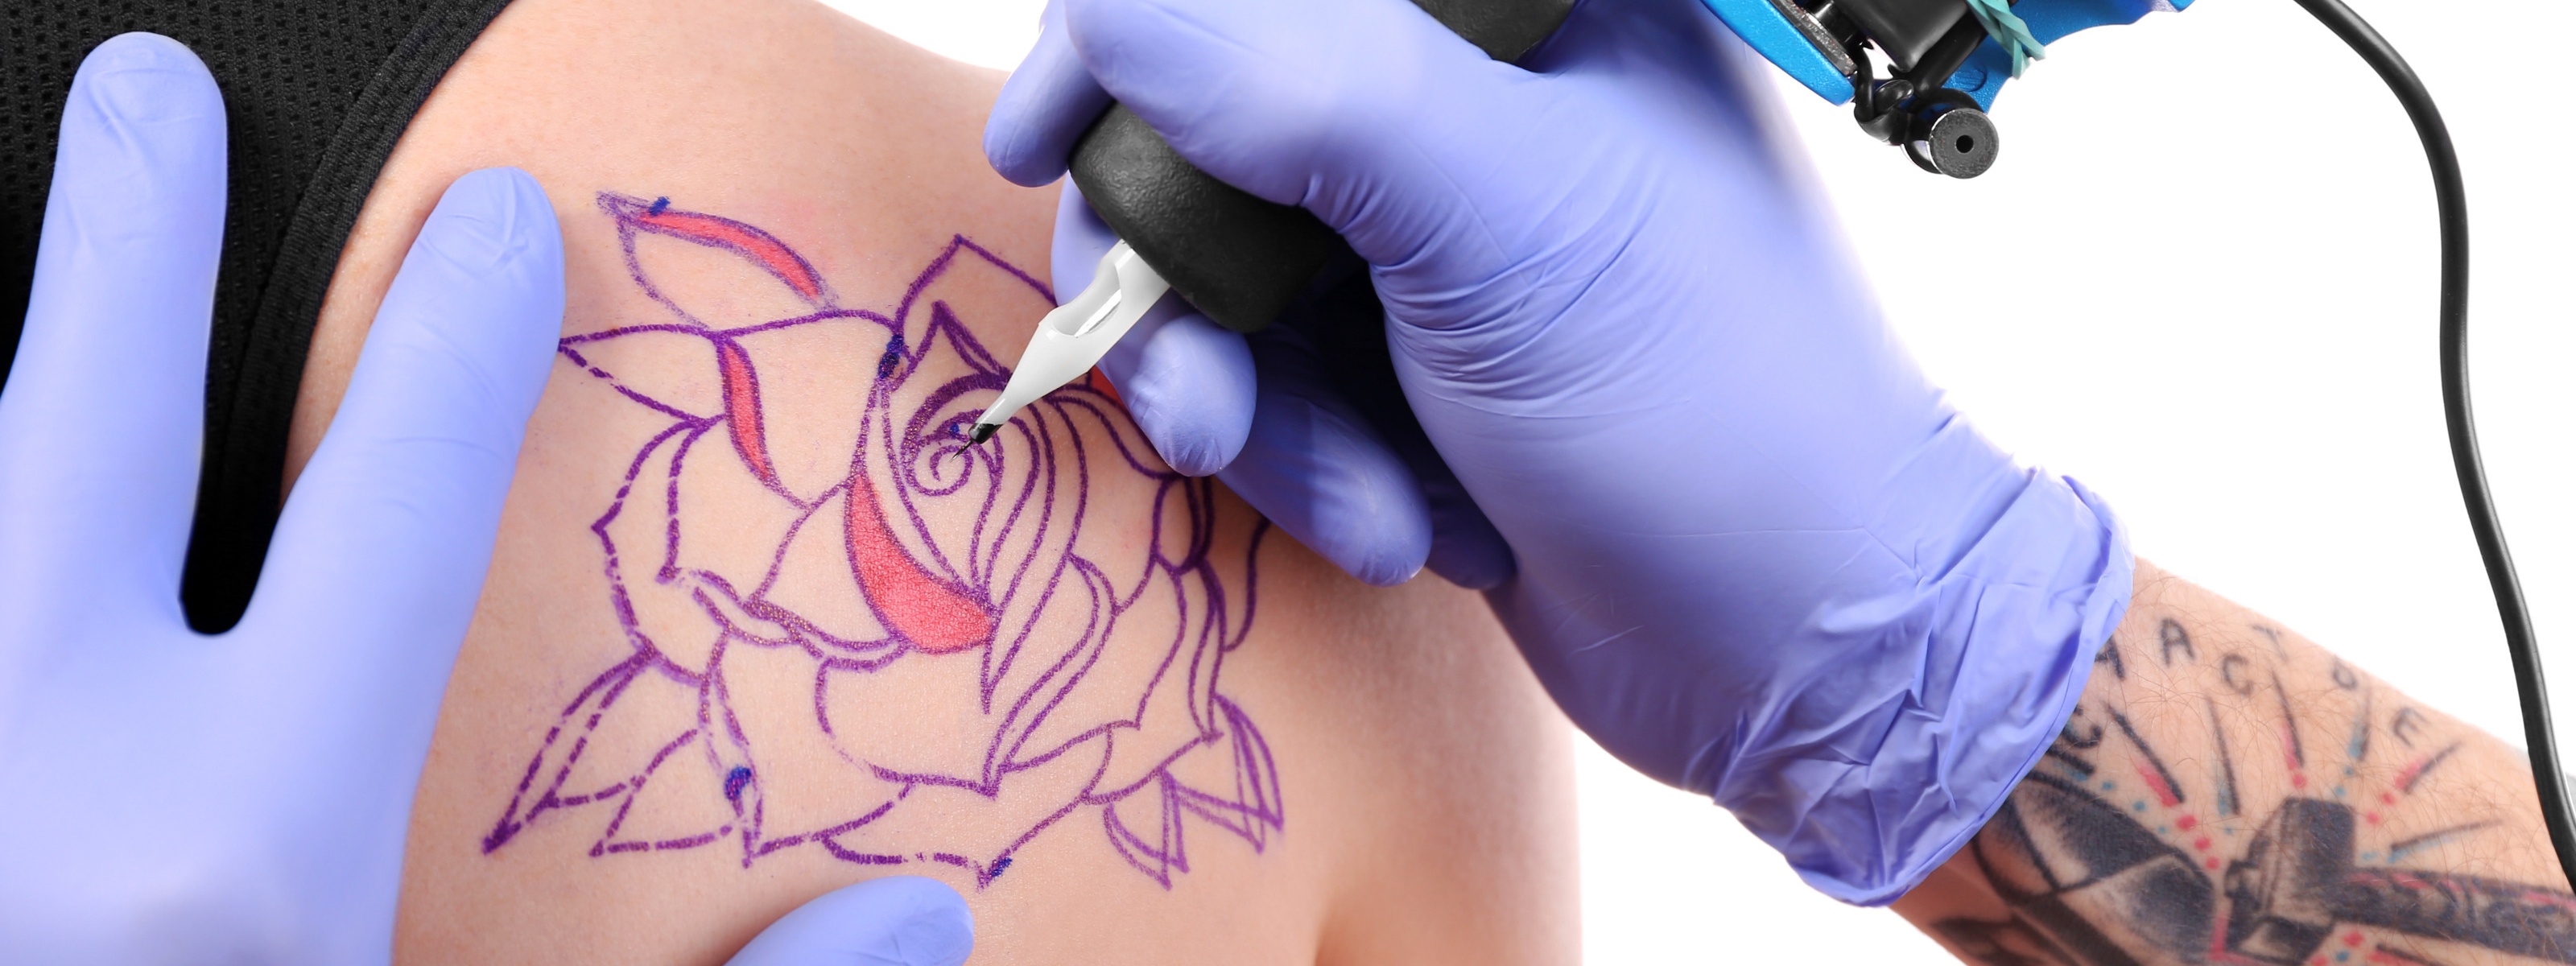 Nahaufnahme von der Erstellung eines Tattoos auf der Schulter einer Person mit einer Tätowiermaschine und lila Handschuhen